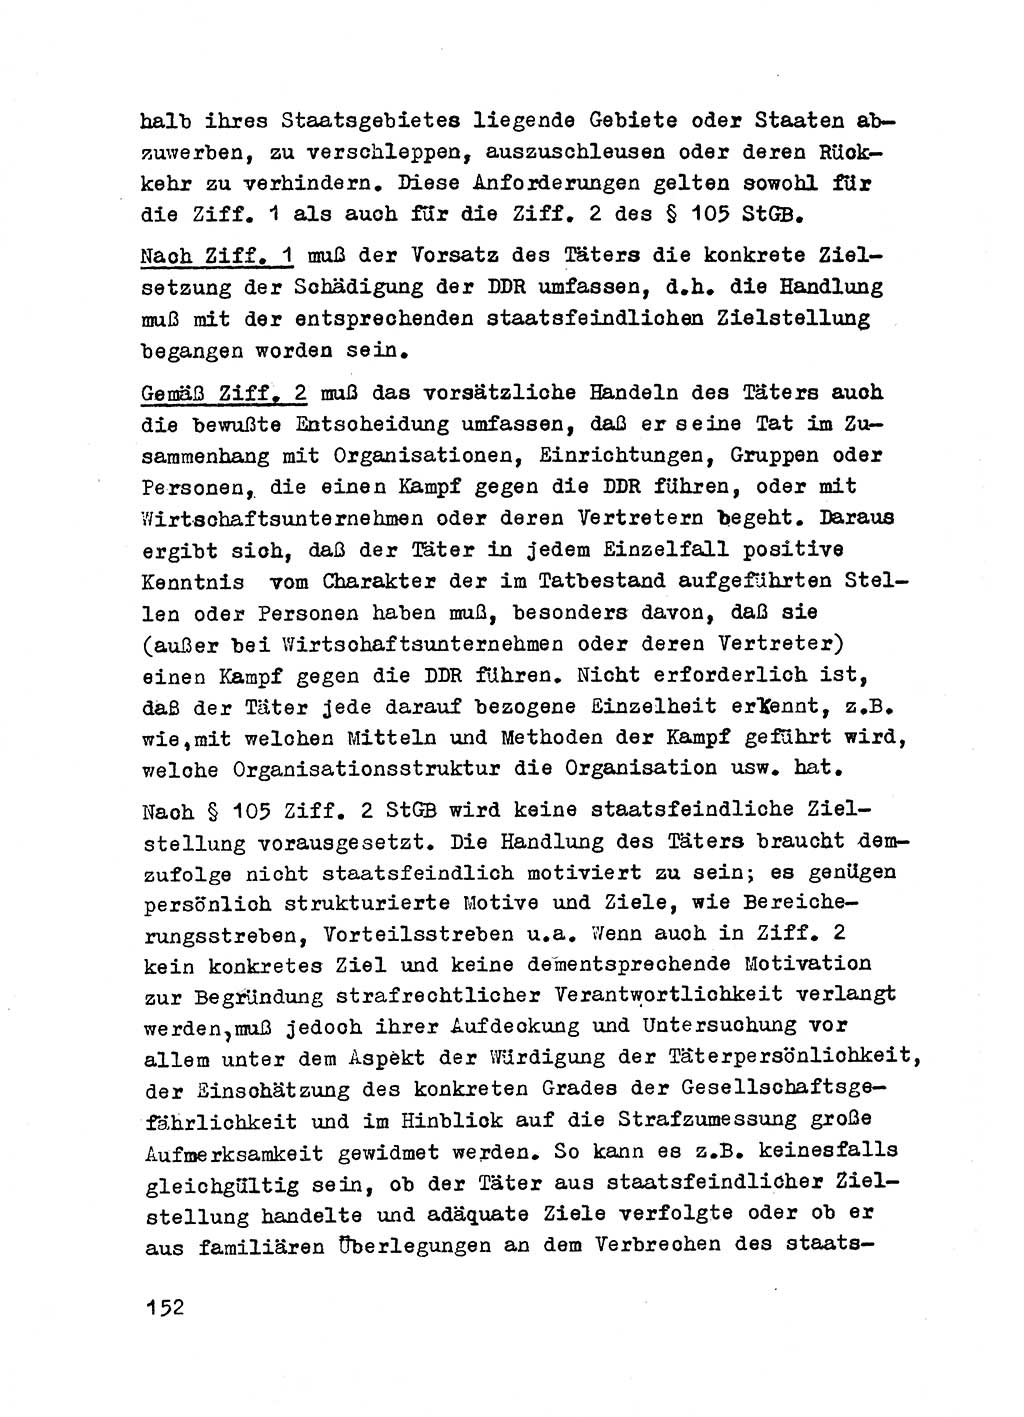 Strafrecht der DDR (Deutsche Demokratische Republik), Besonderer Teil, Lehrmaterial, Heft 2 1969, Seite 152 (Strafr. DDR BT Lehrmat. H. 2 1969, S. 152)